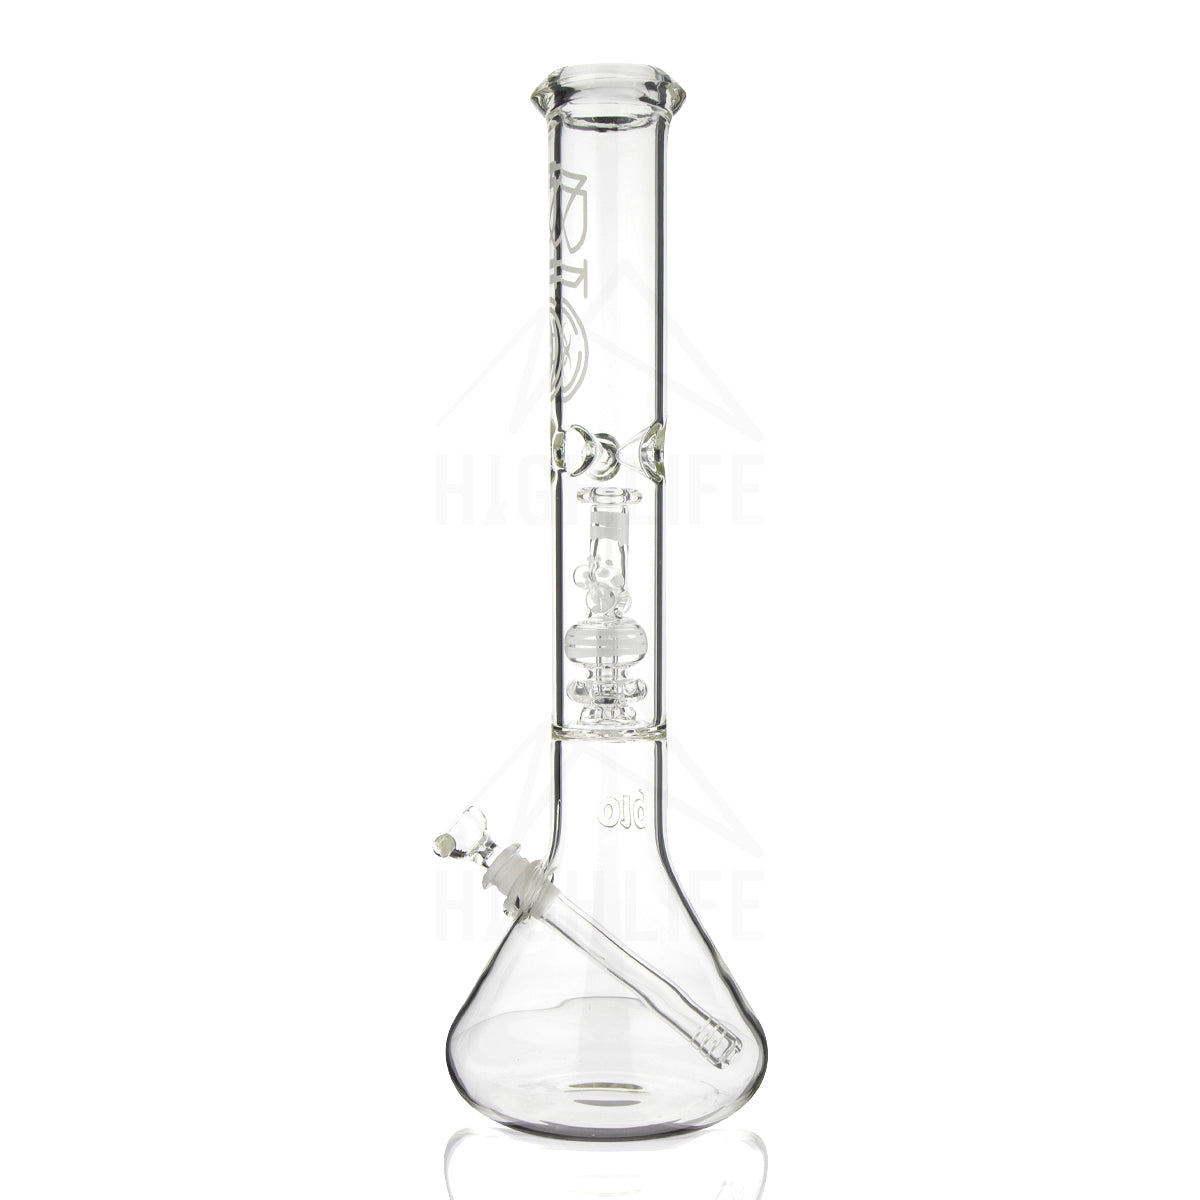 bio glass bong